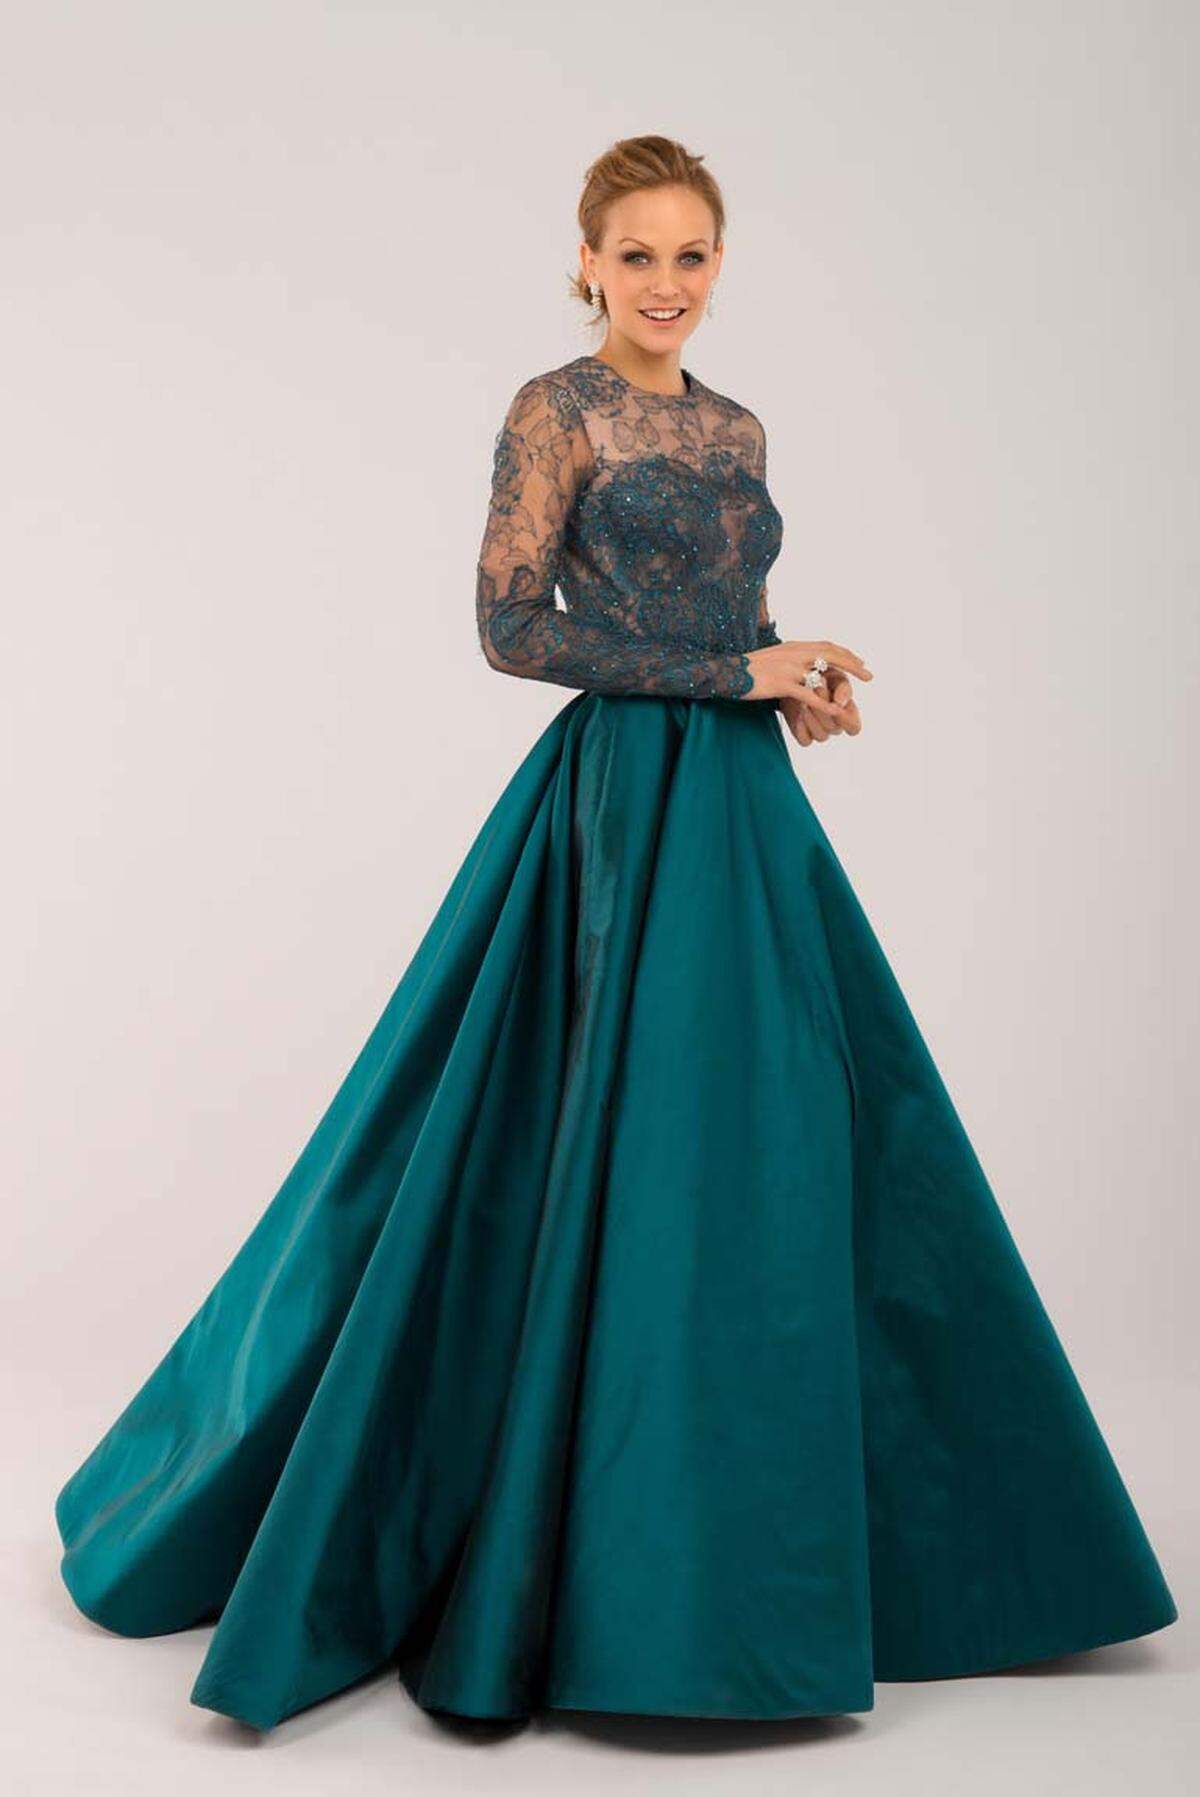 Opernball-Moderatorin Mirjam Weichselbraun macht um ihr Kleid auch kein Geheimnis. Sie trägt ein dunkelgrünes Kleid des Wiener Designers Jürgen Christian Hoerl. Die Robe besteht aus Seidentaft und türkischer Spitze.